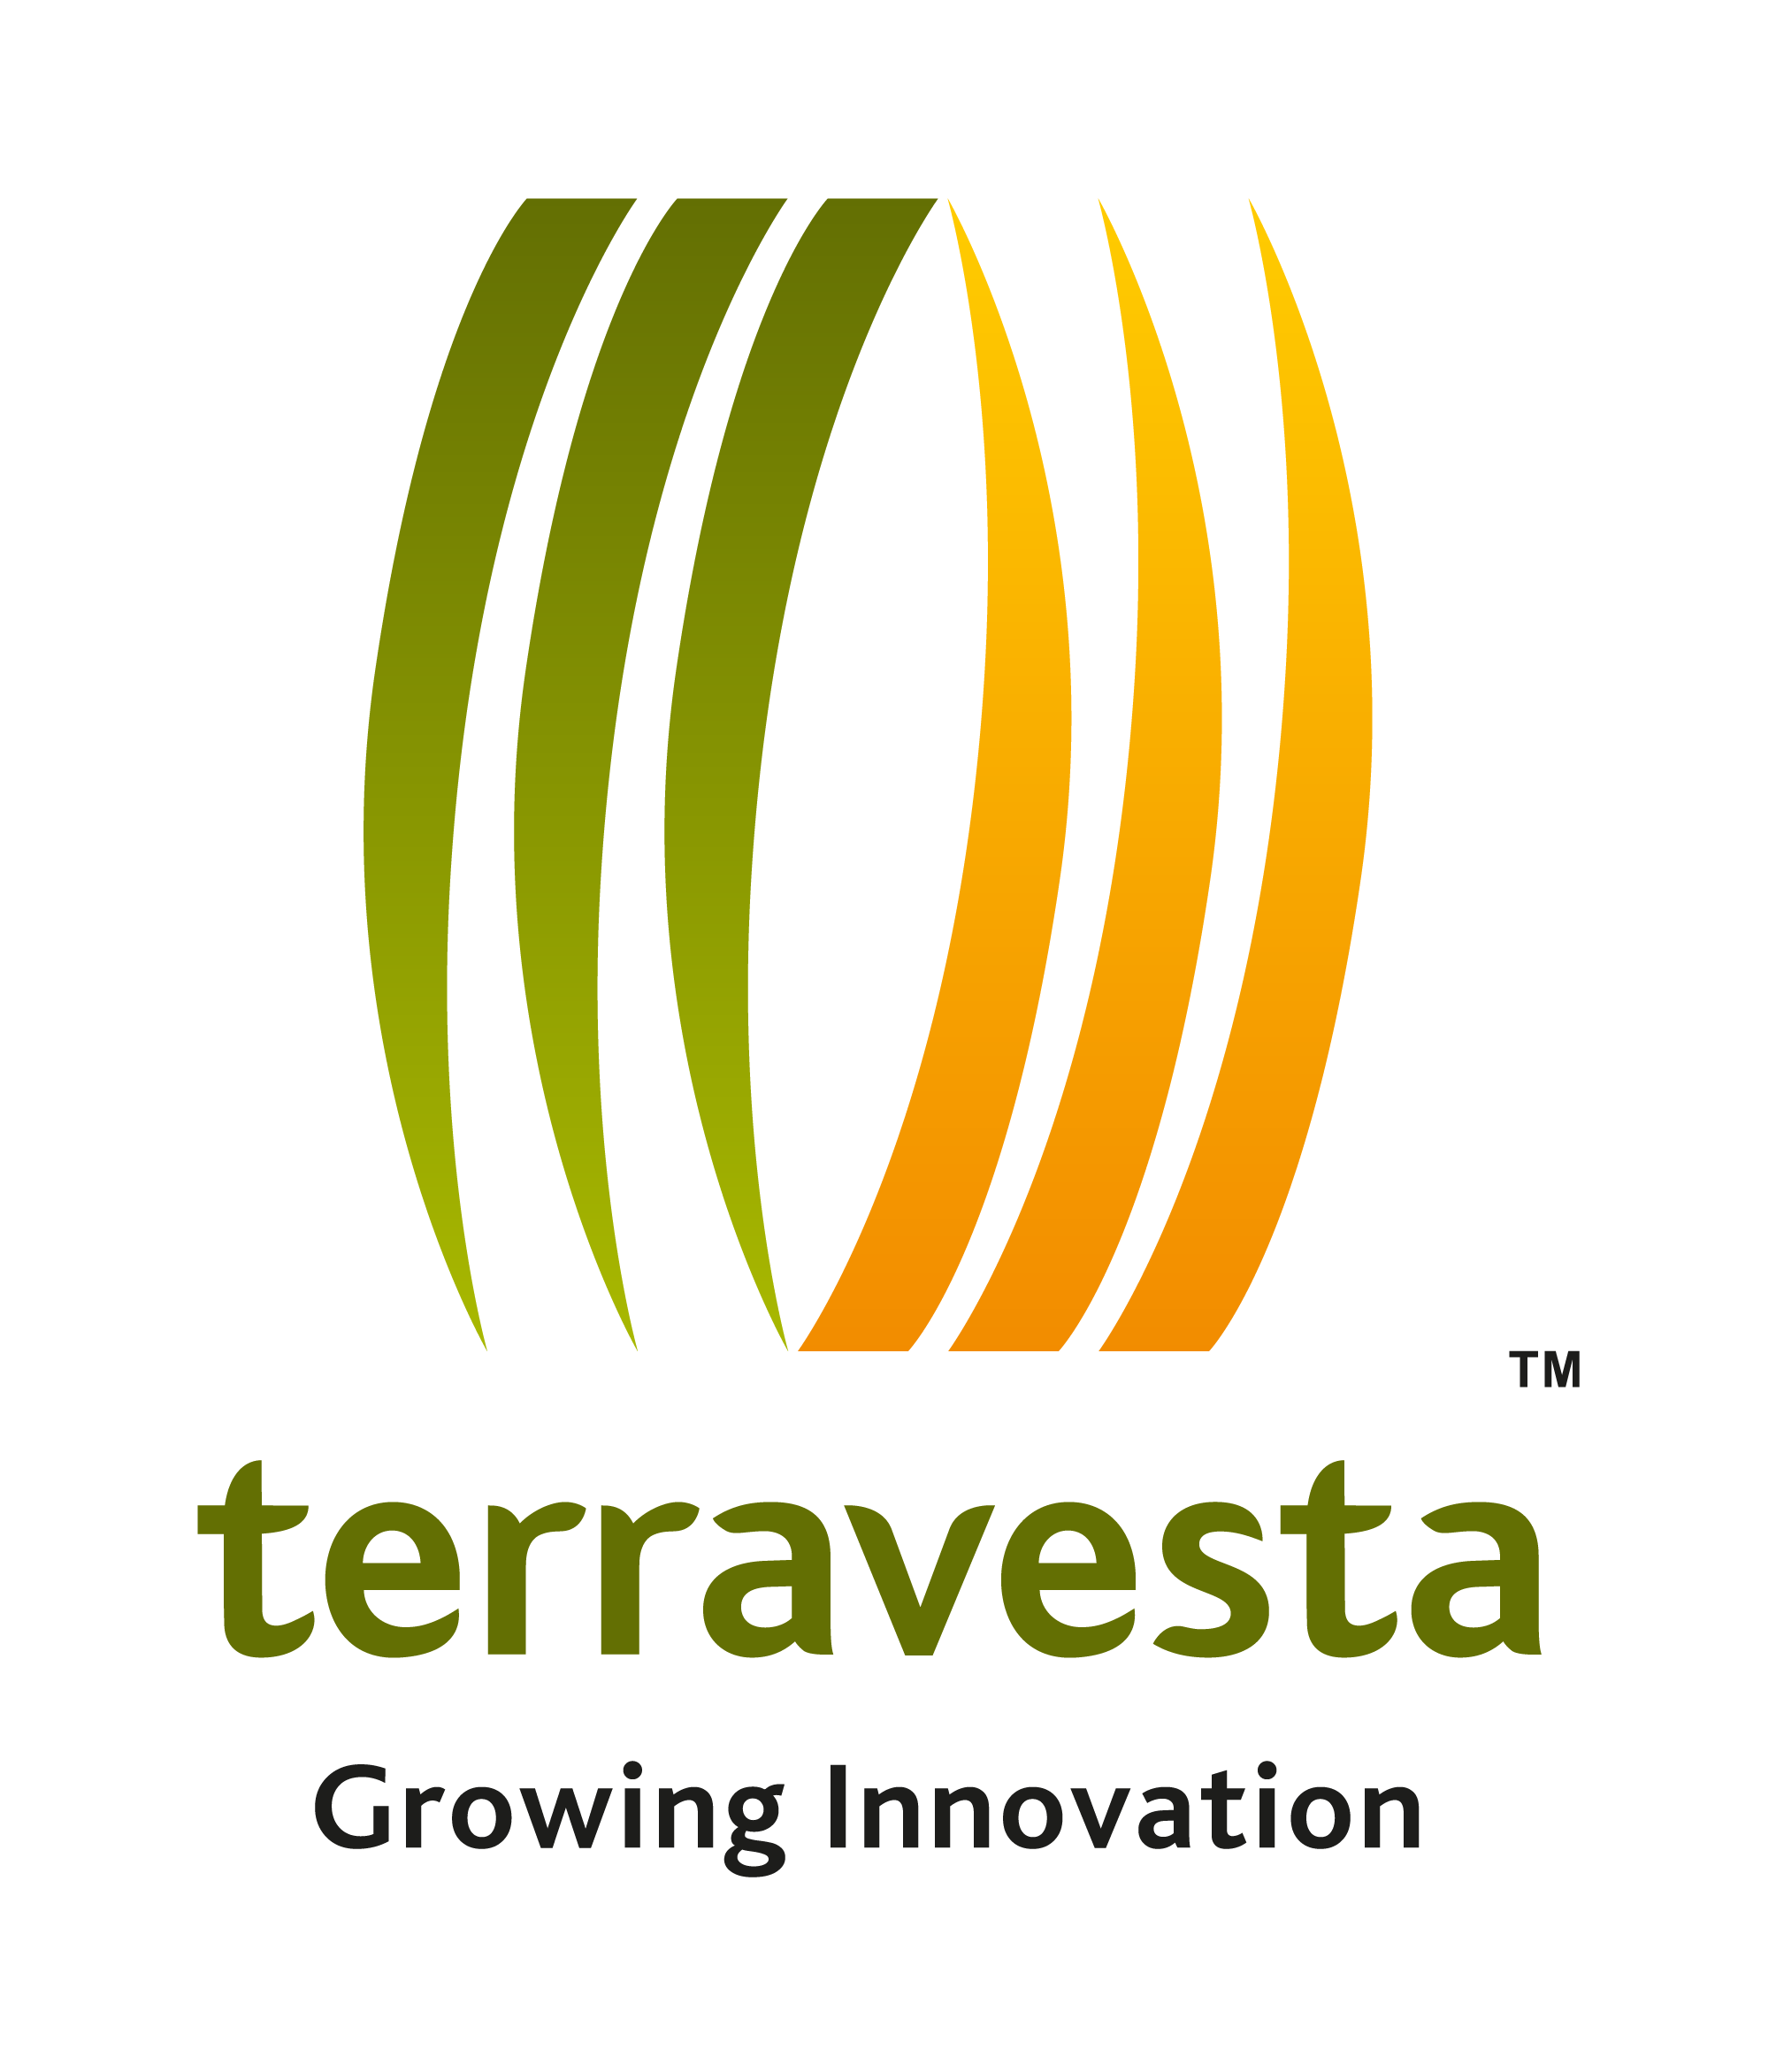 Terravesta logo for session sponsorship